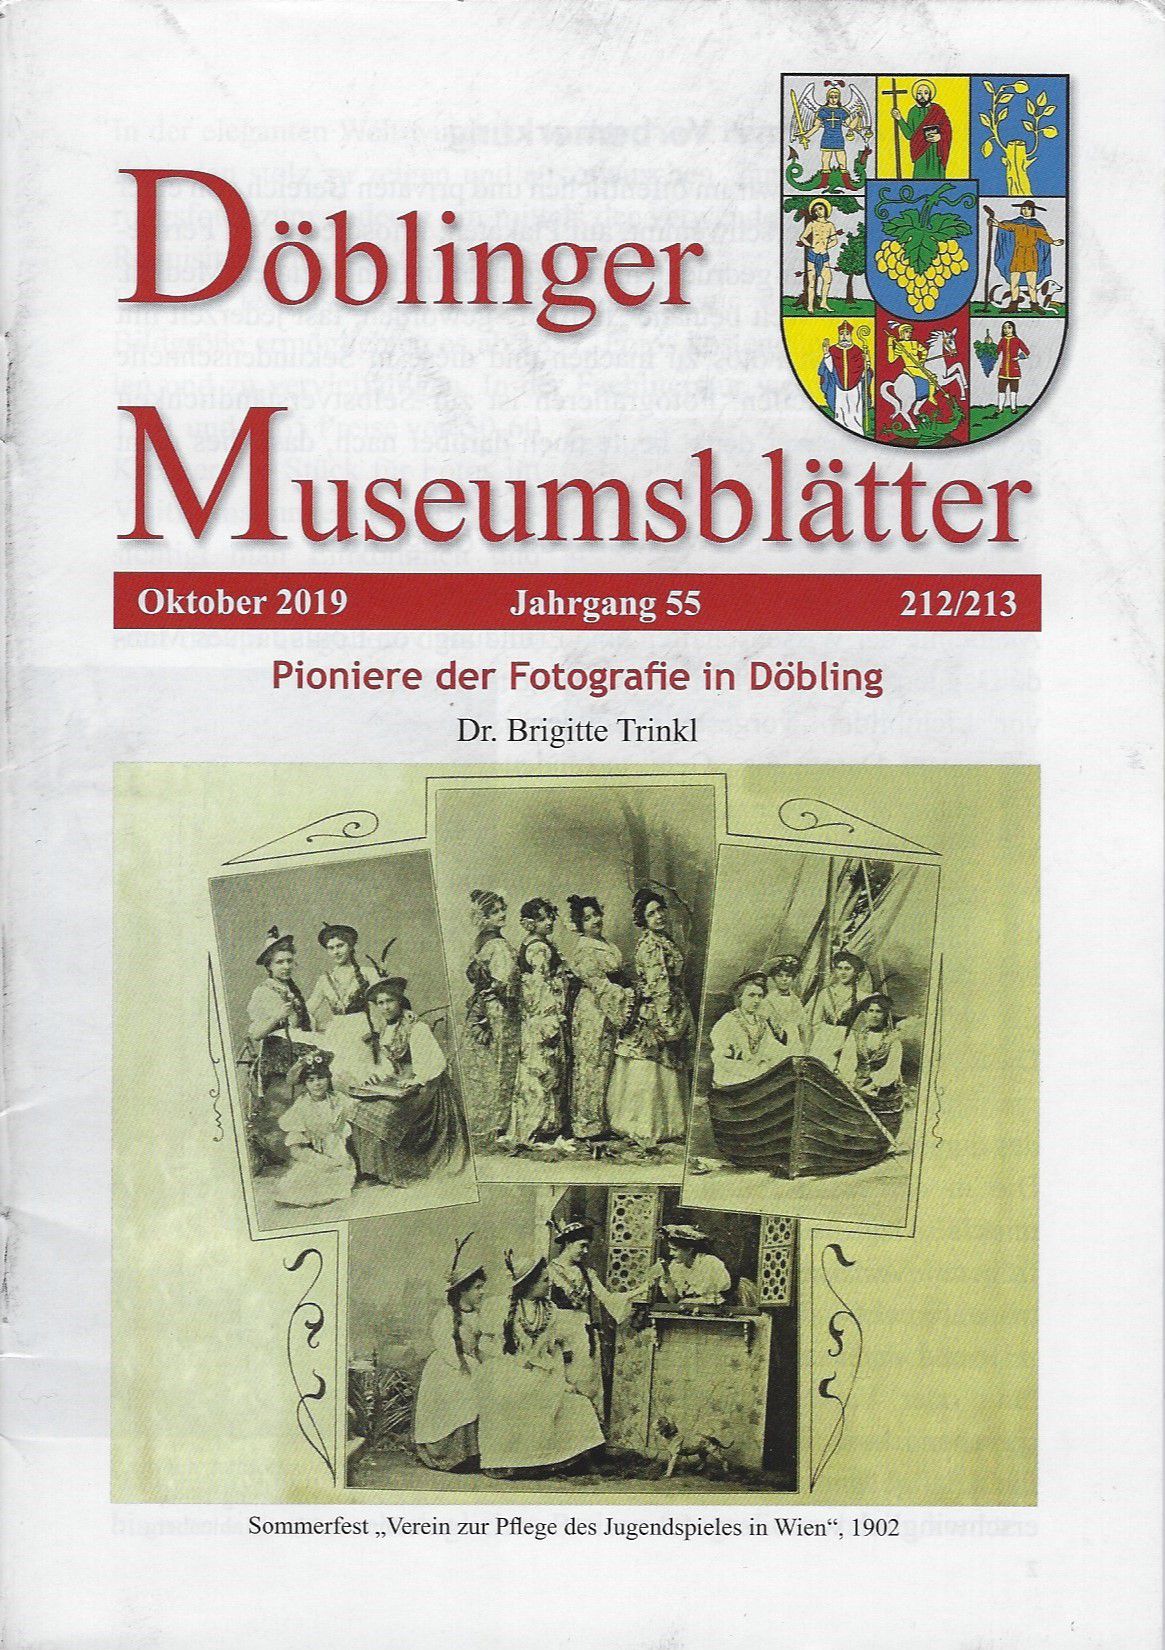 Publikation: Döblinger Museumsblätter, Pioniere der Fotografie in Döbling